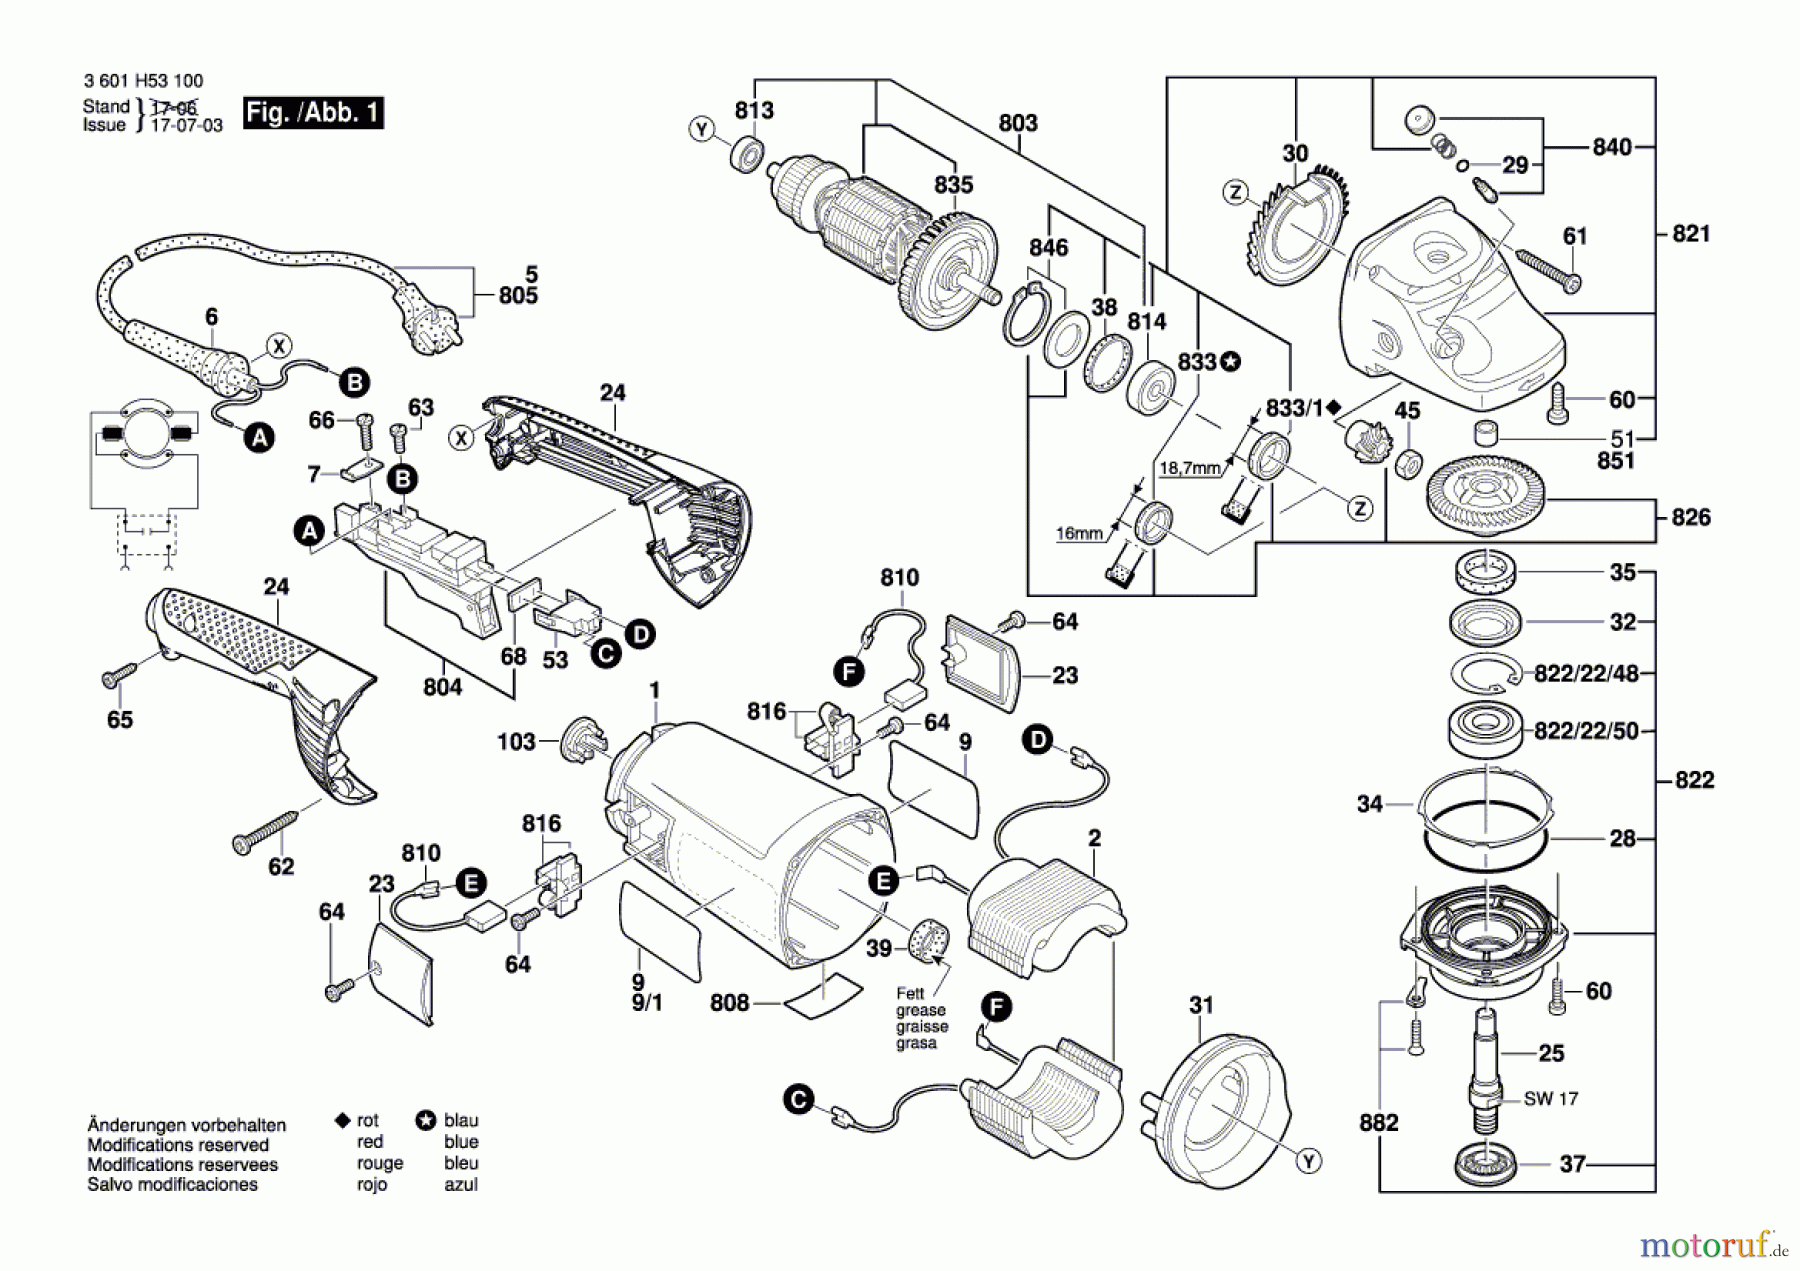  Bosch Werkzeug Winkelschleifer GWS 26-180 H Seite 1